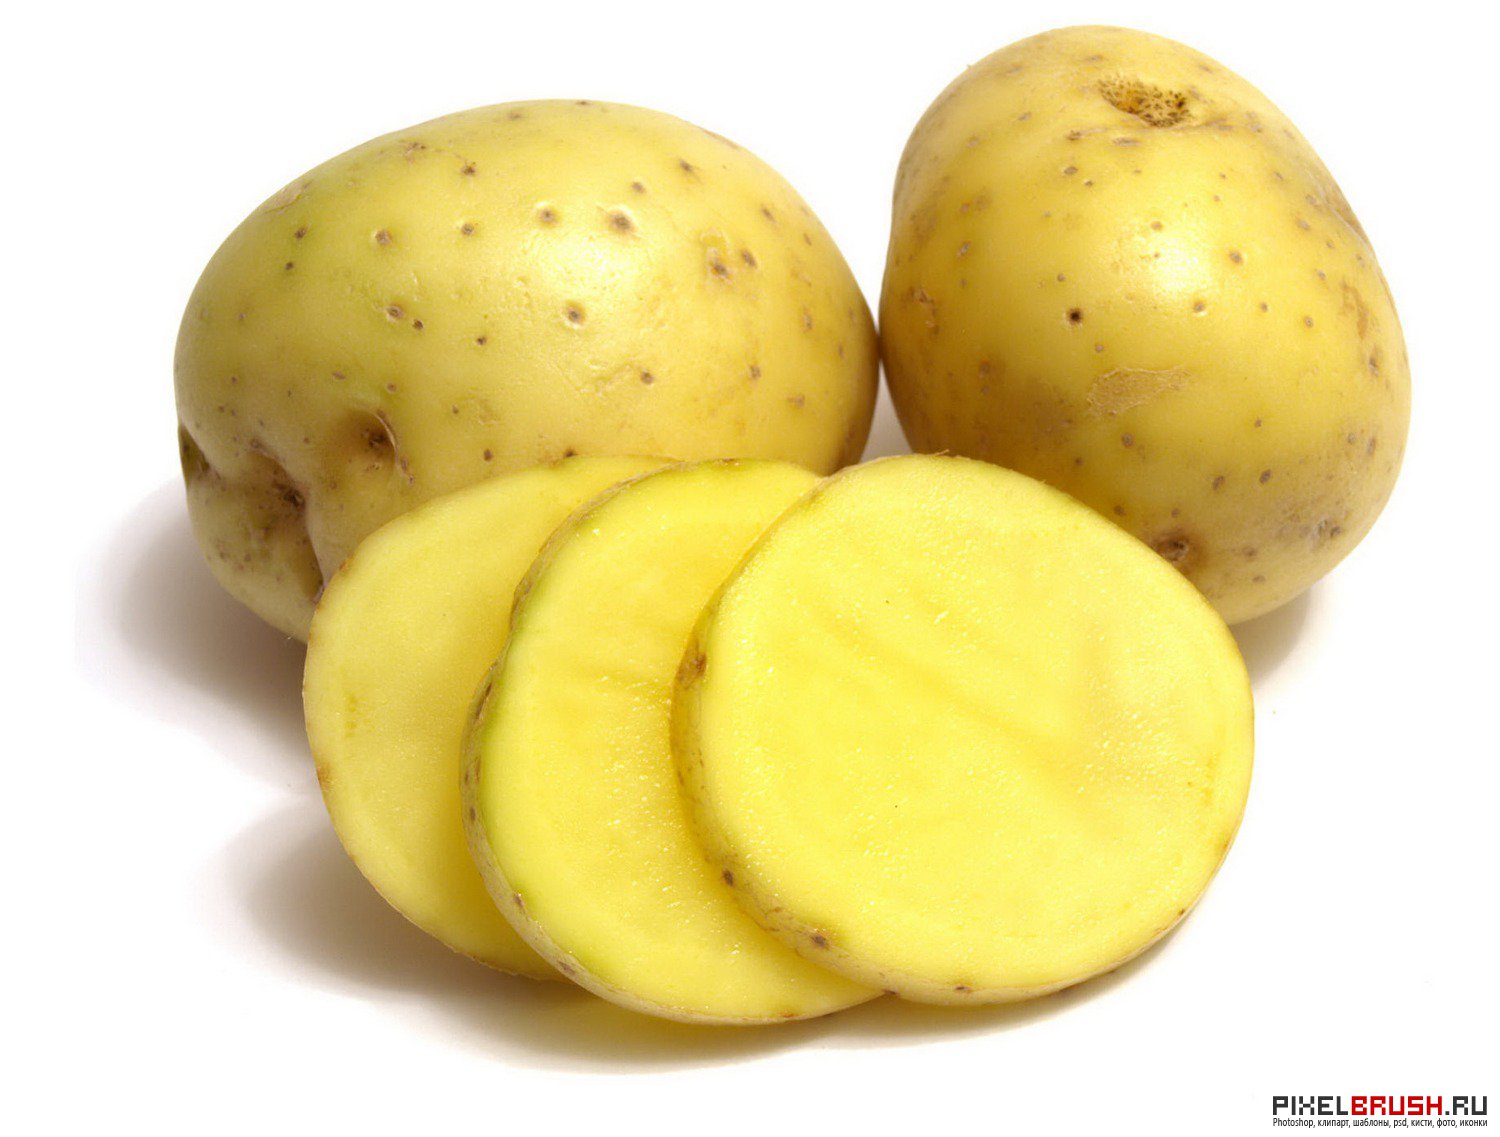 Potatoes picture. Картошка картинка. Картофель на белом фоне. Картофель для детей. Картофель картинка для детей.